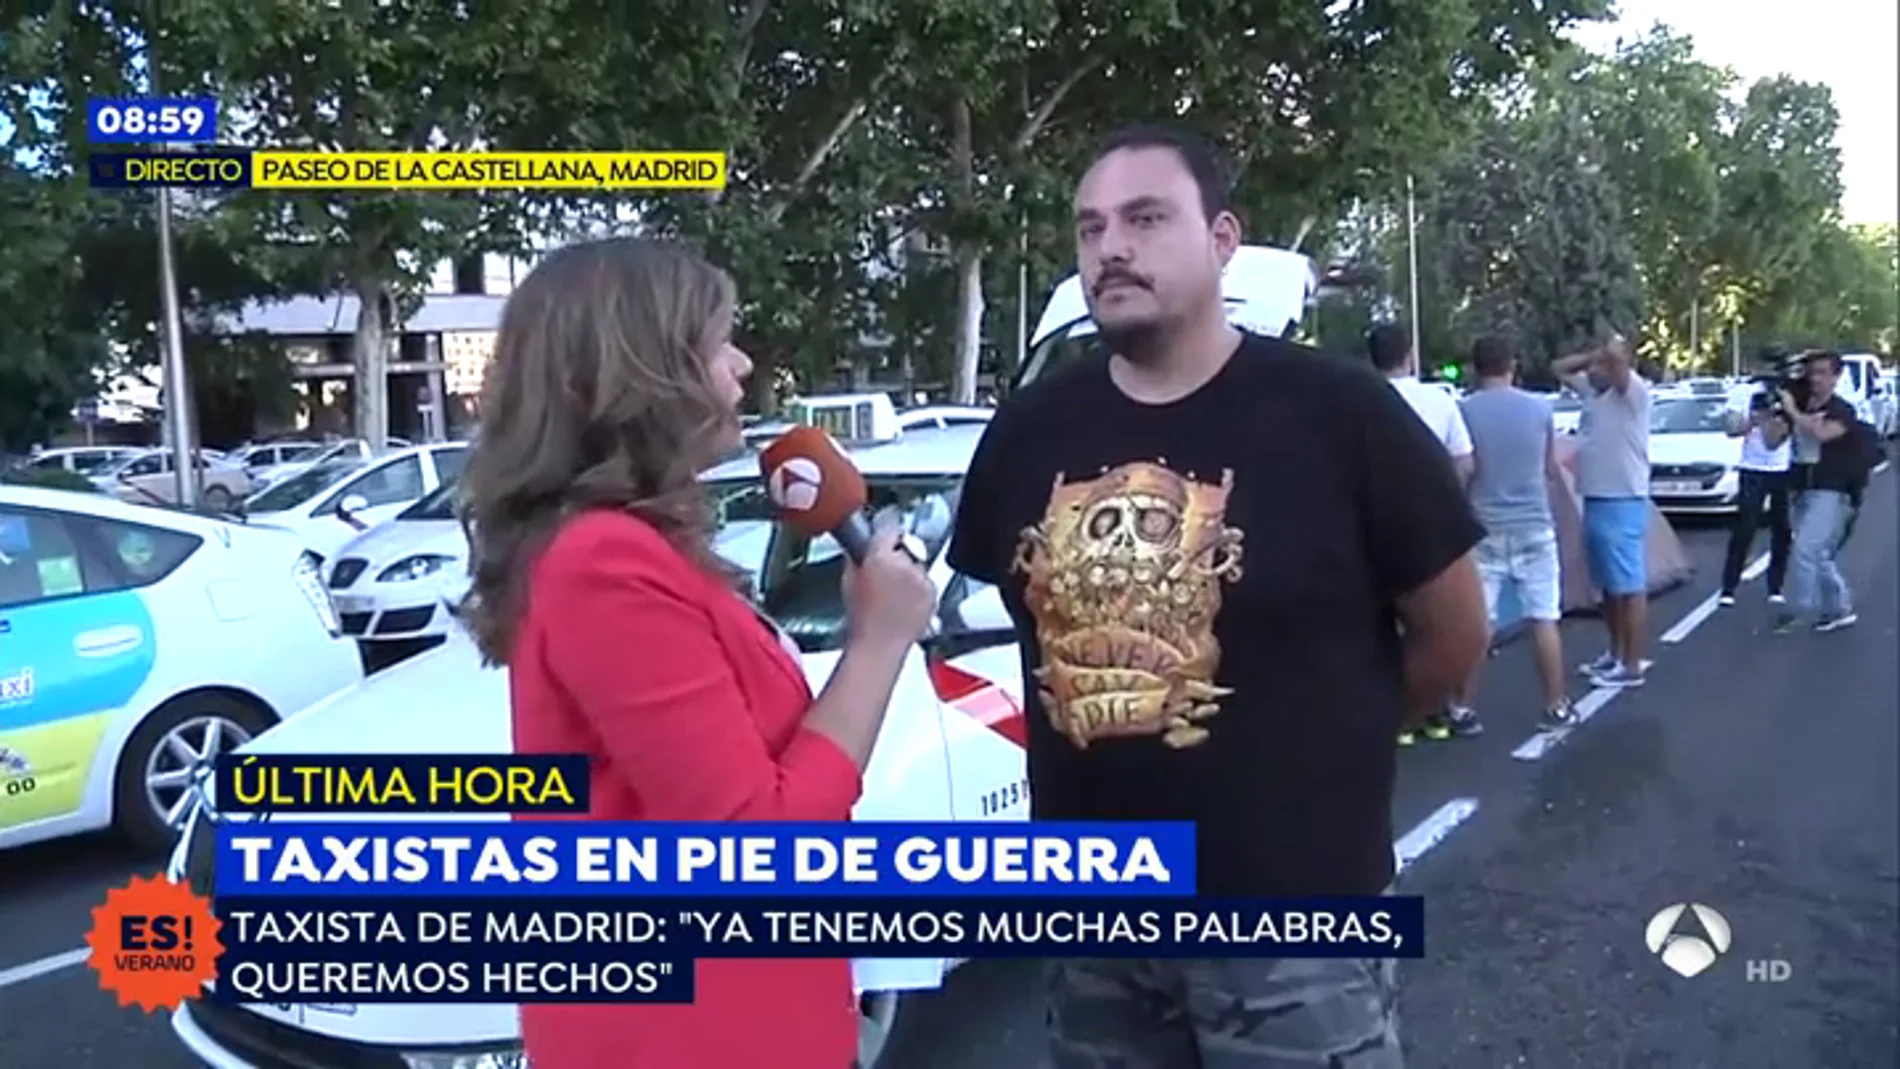 Taxista de Madrid: "El único partido político que se ha posicionado con nosotros es Podemos"